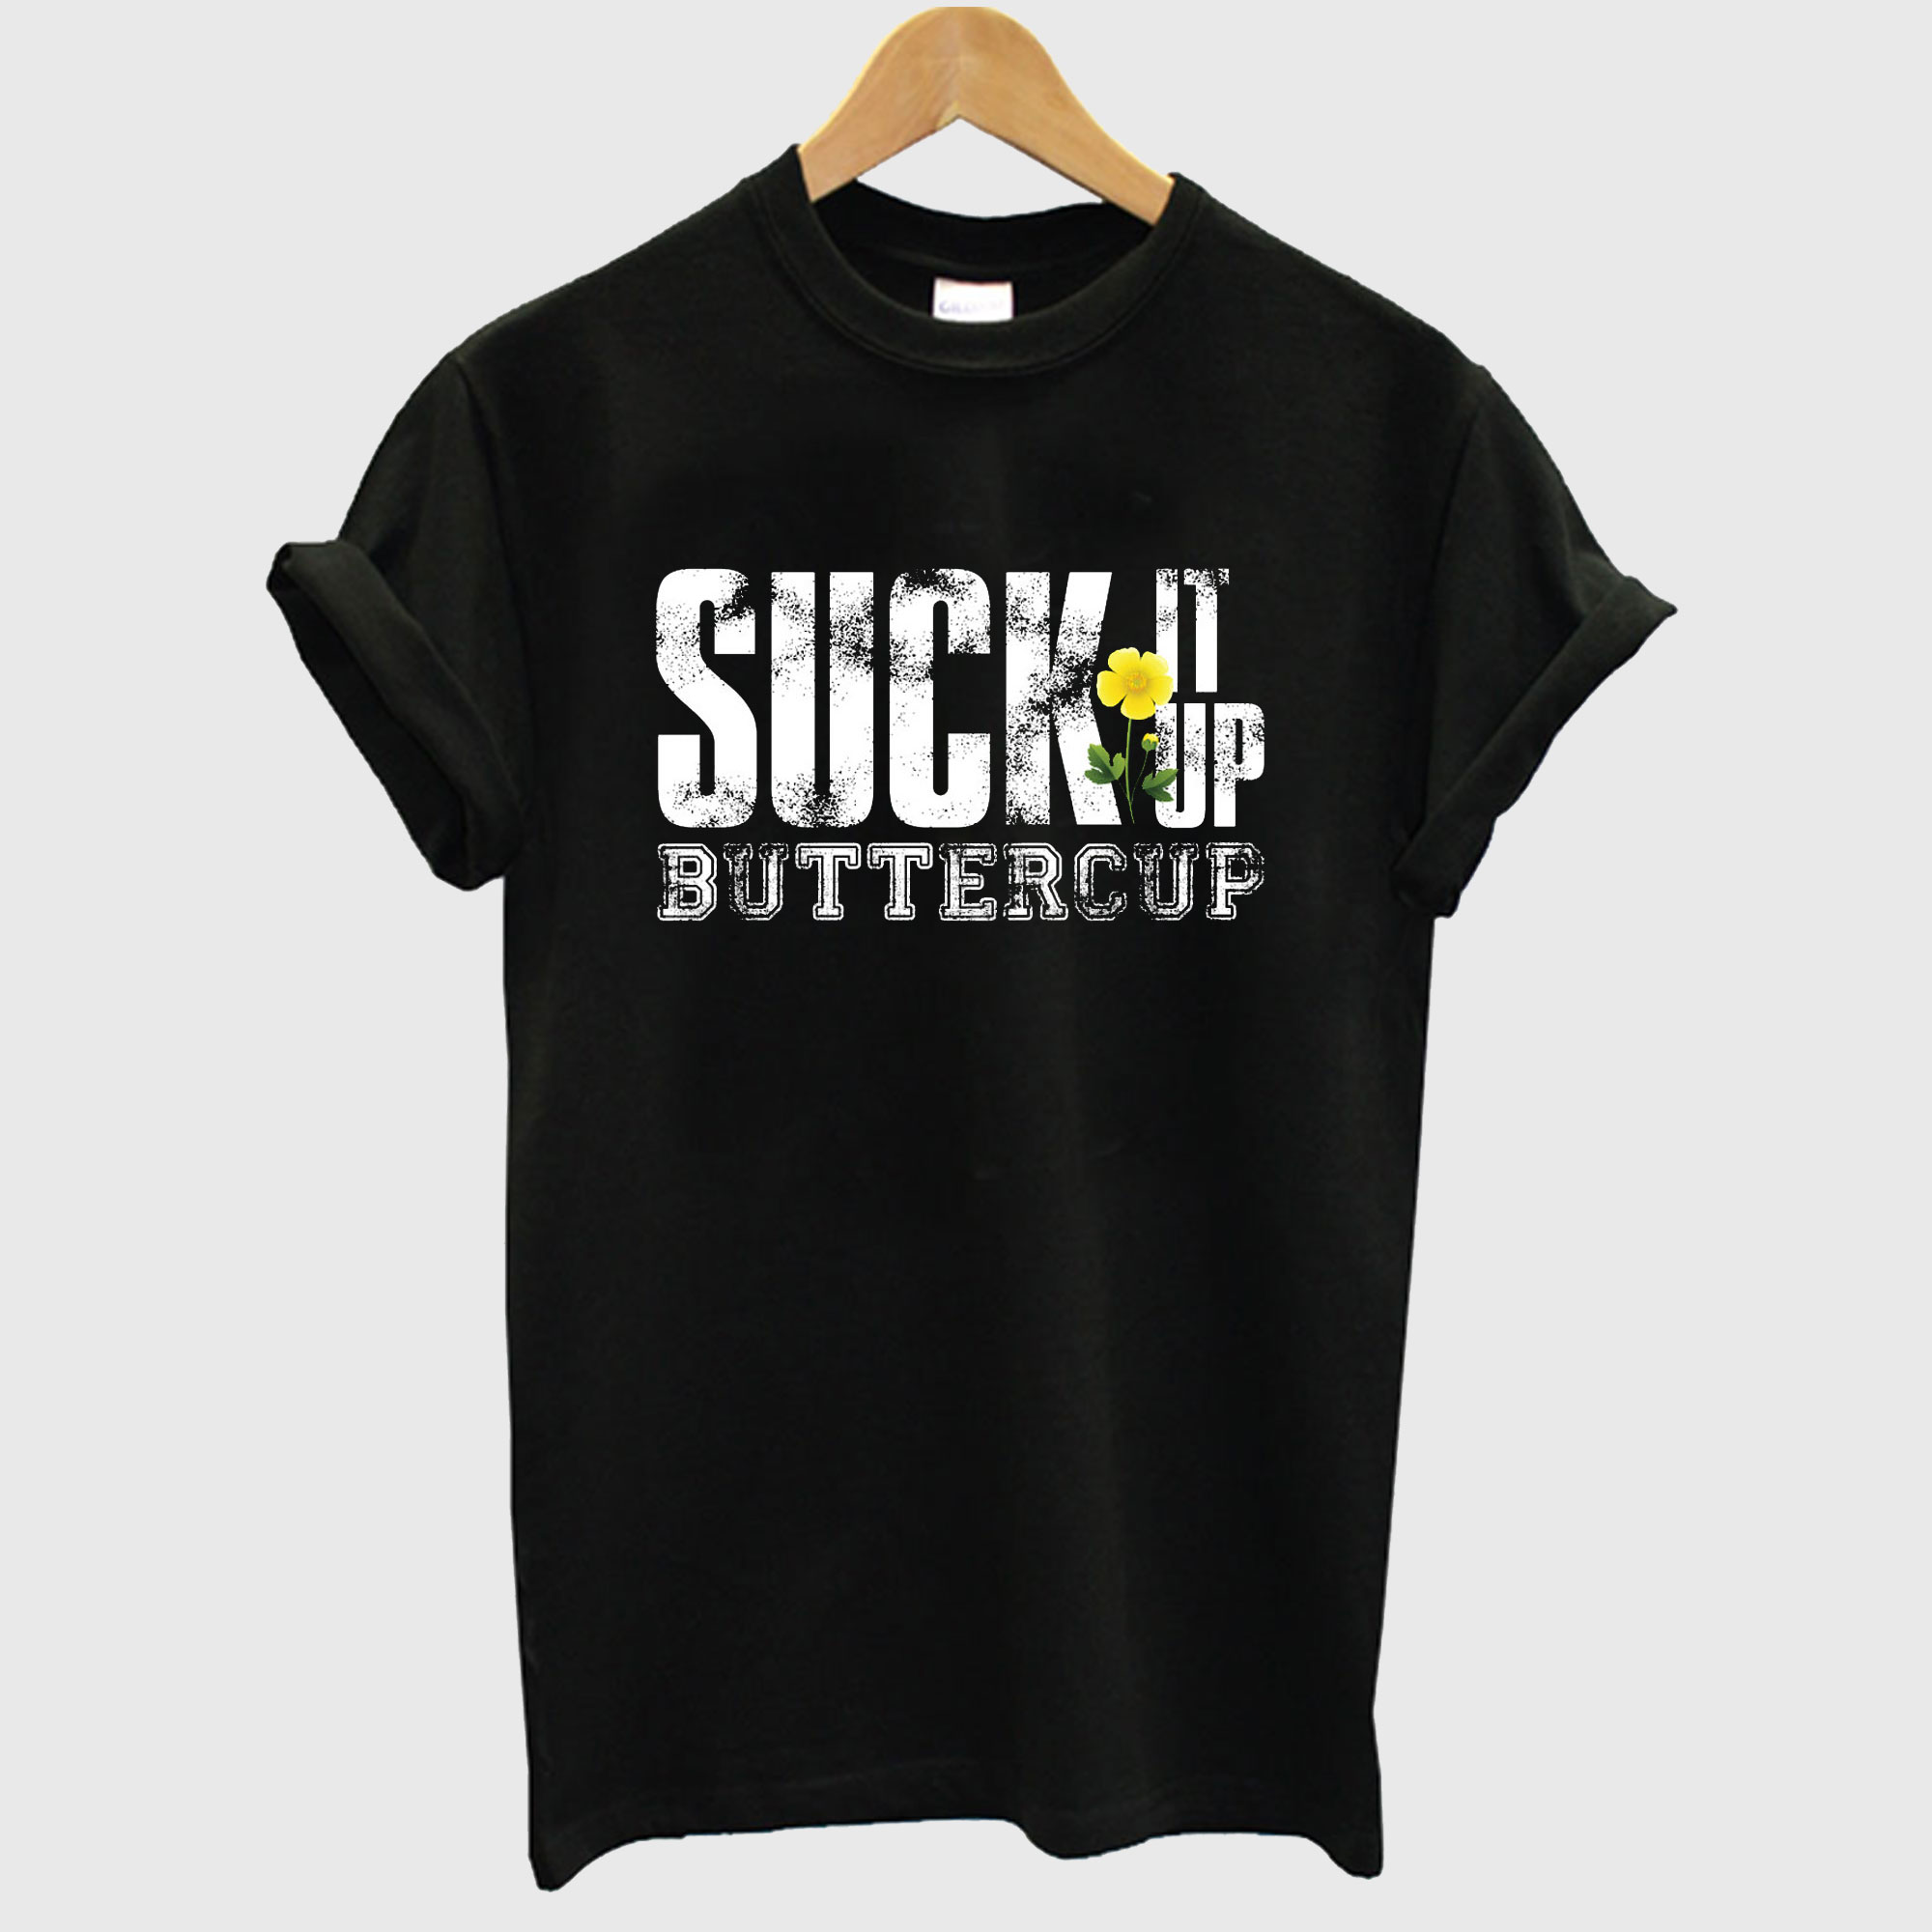 Suck It Up T-Shirt